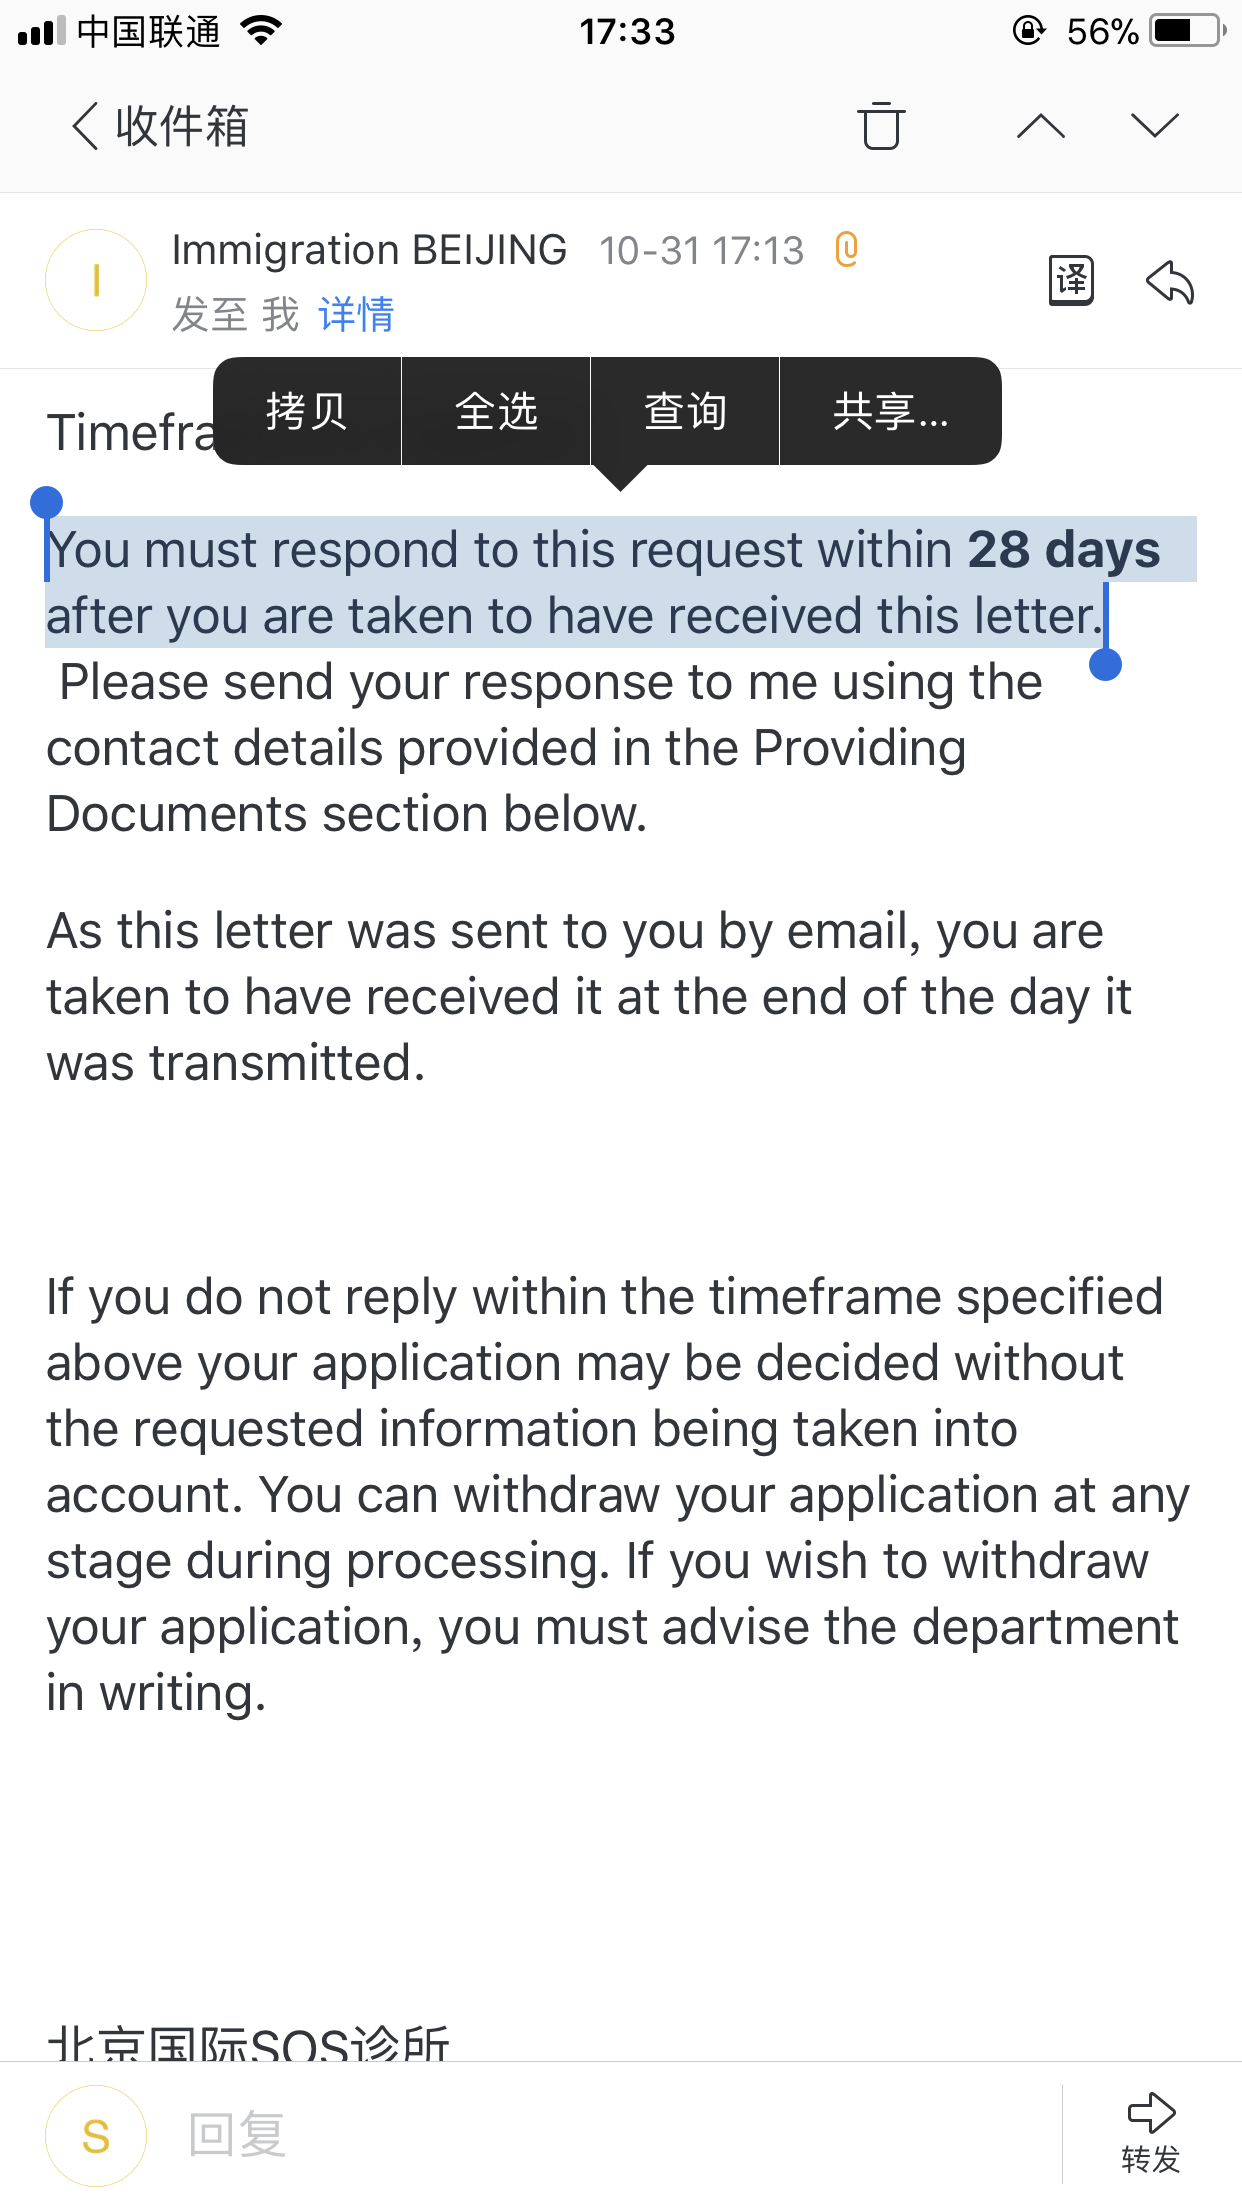 澳洲旅游签证,收到体检通知邮件,是否需要作出